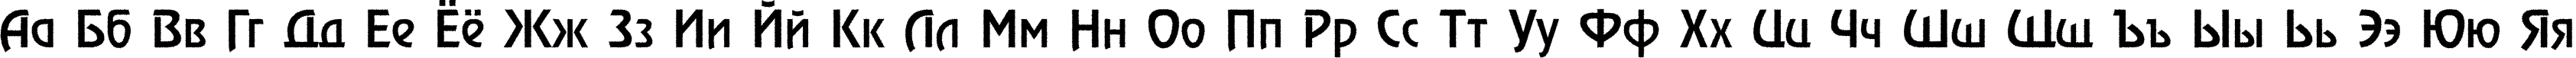 Пример написания русского алфавита шрифтом a_RewinderRgh